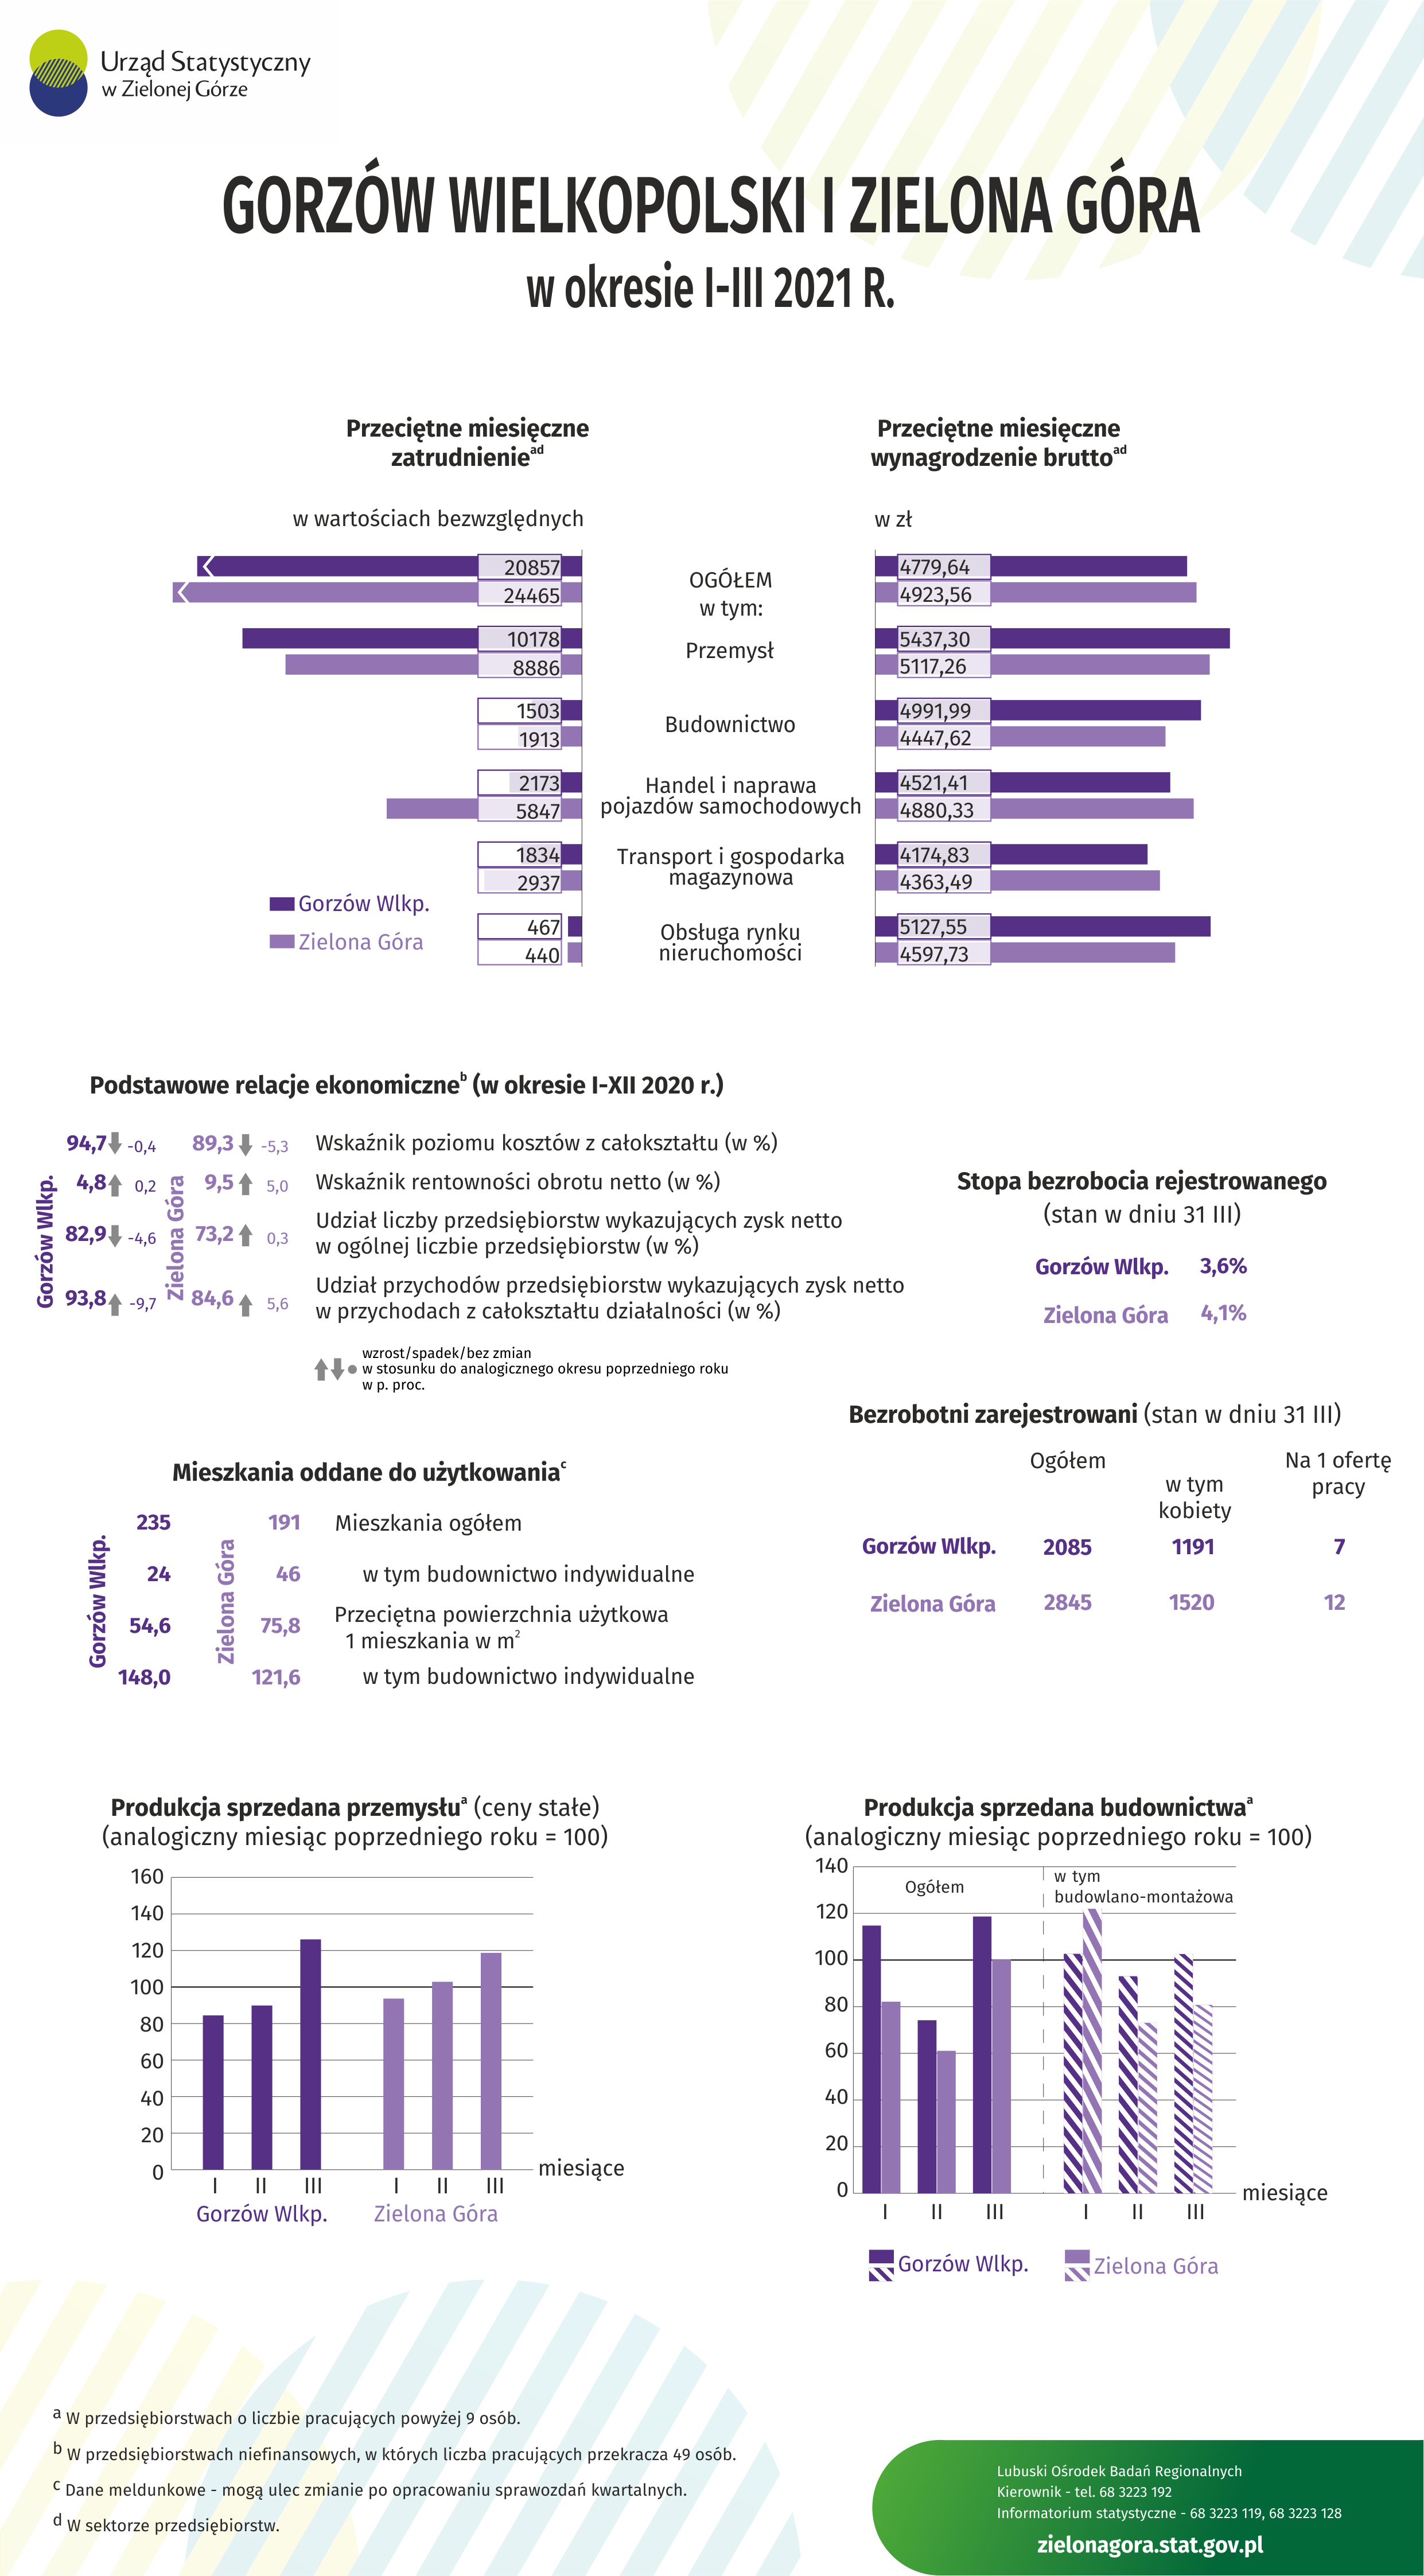 Infografika prezentująca wybrane dane gospodarcze dla Zielonej Góry i Gorzowa Wielkopolskiego. Plik pdf i excel zamieszczone w plikach do pobrania.